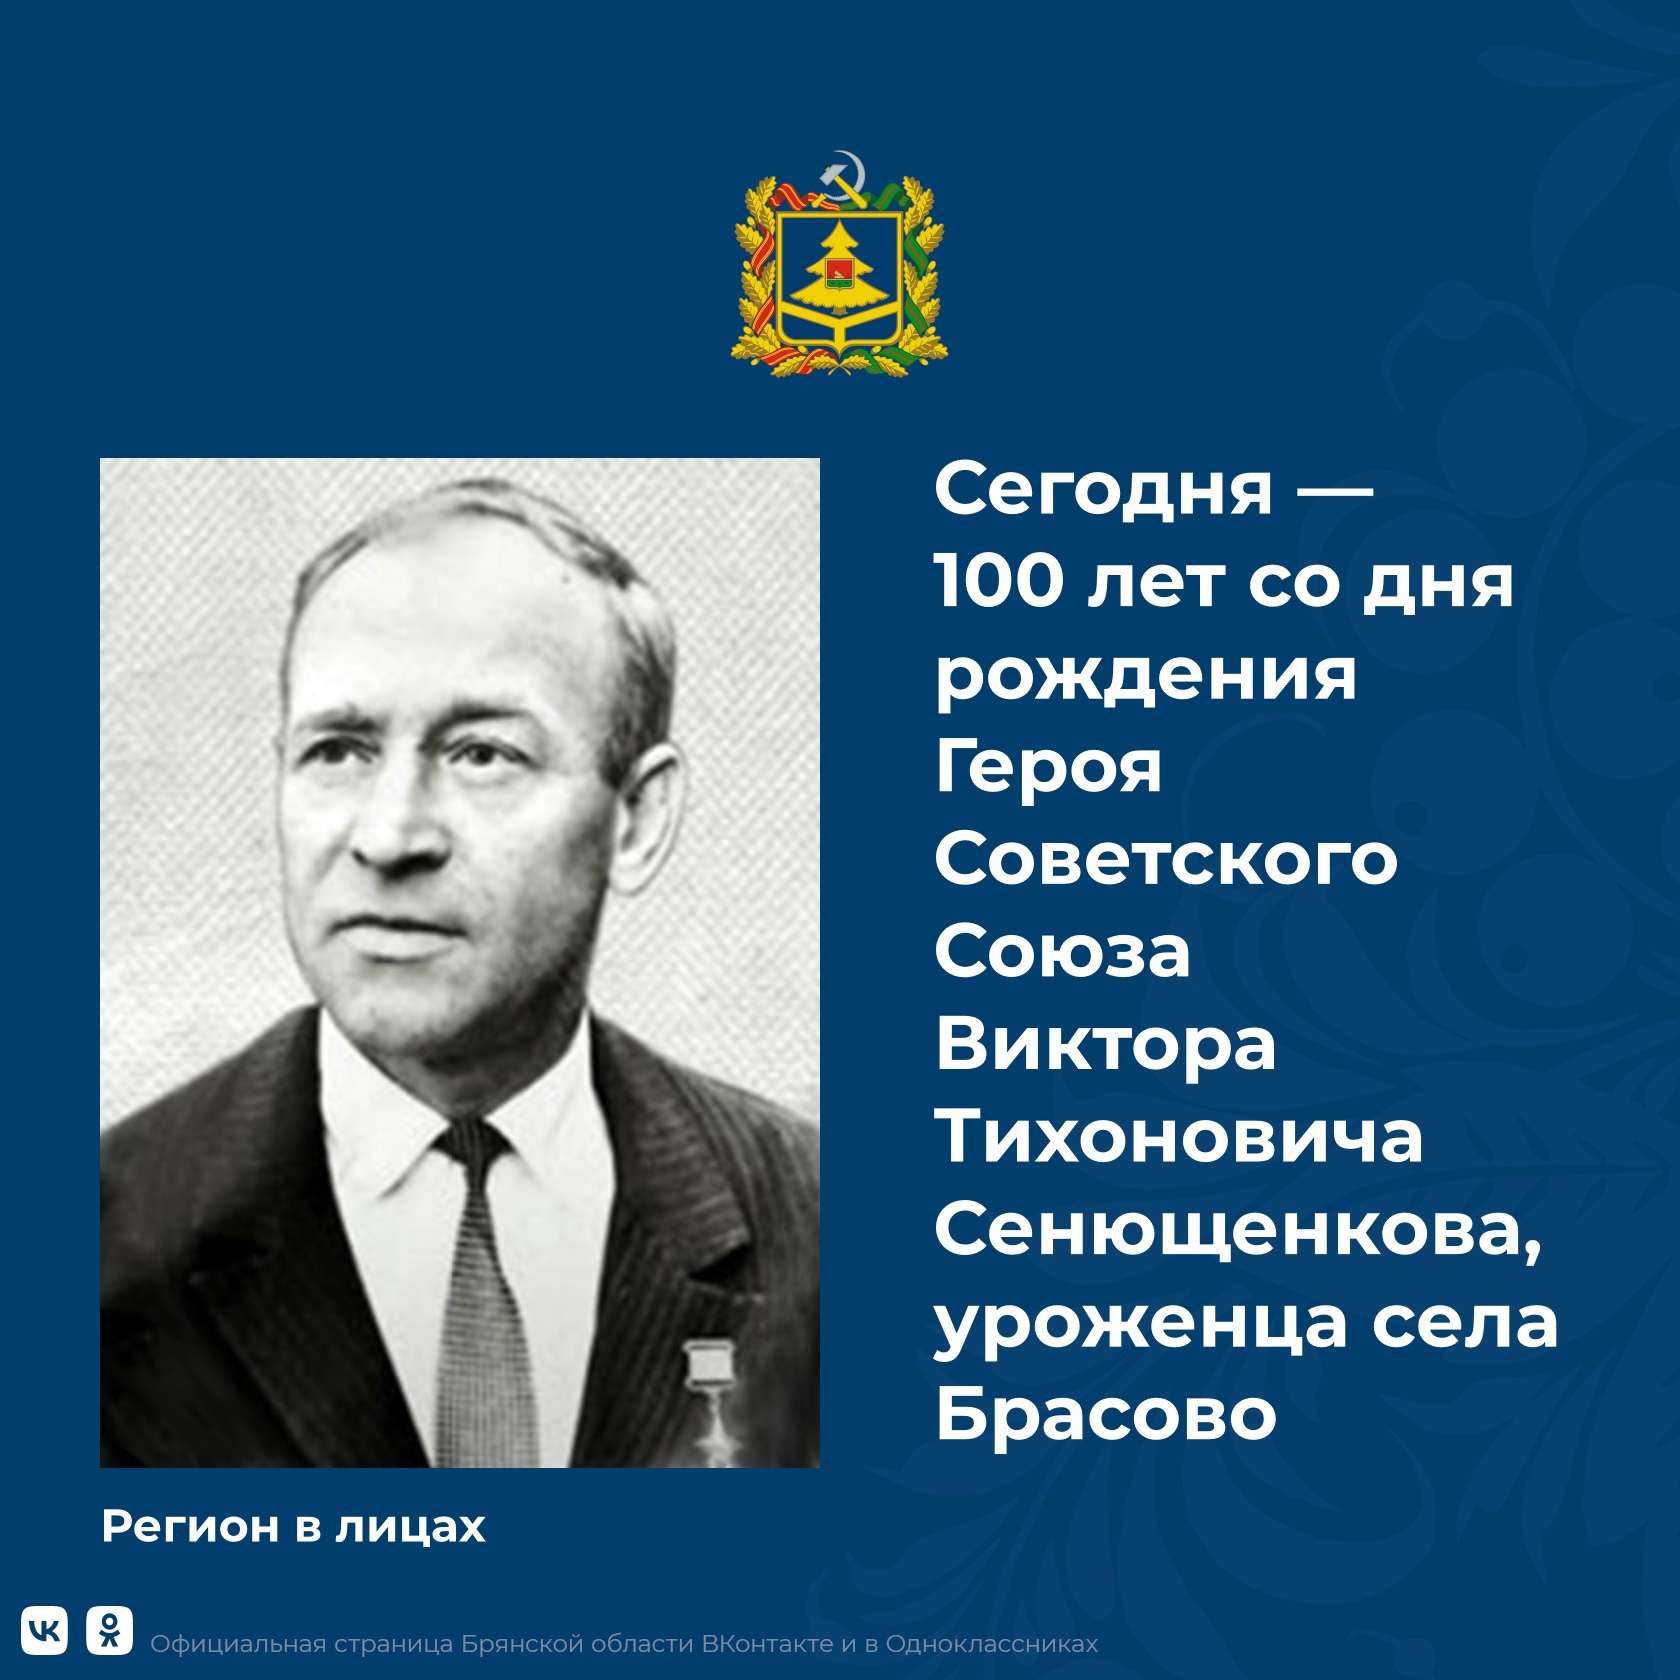 Сегодня 100-летие со дня рождения Героя Советского Союза Виктора Сенющенкова